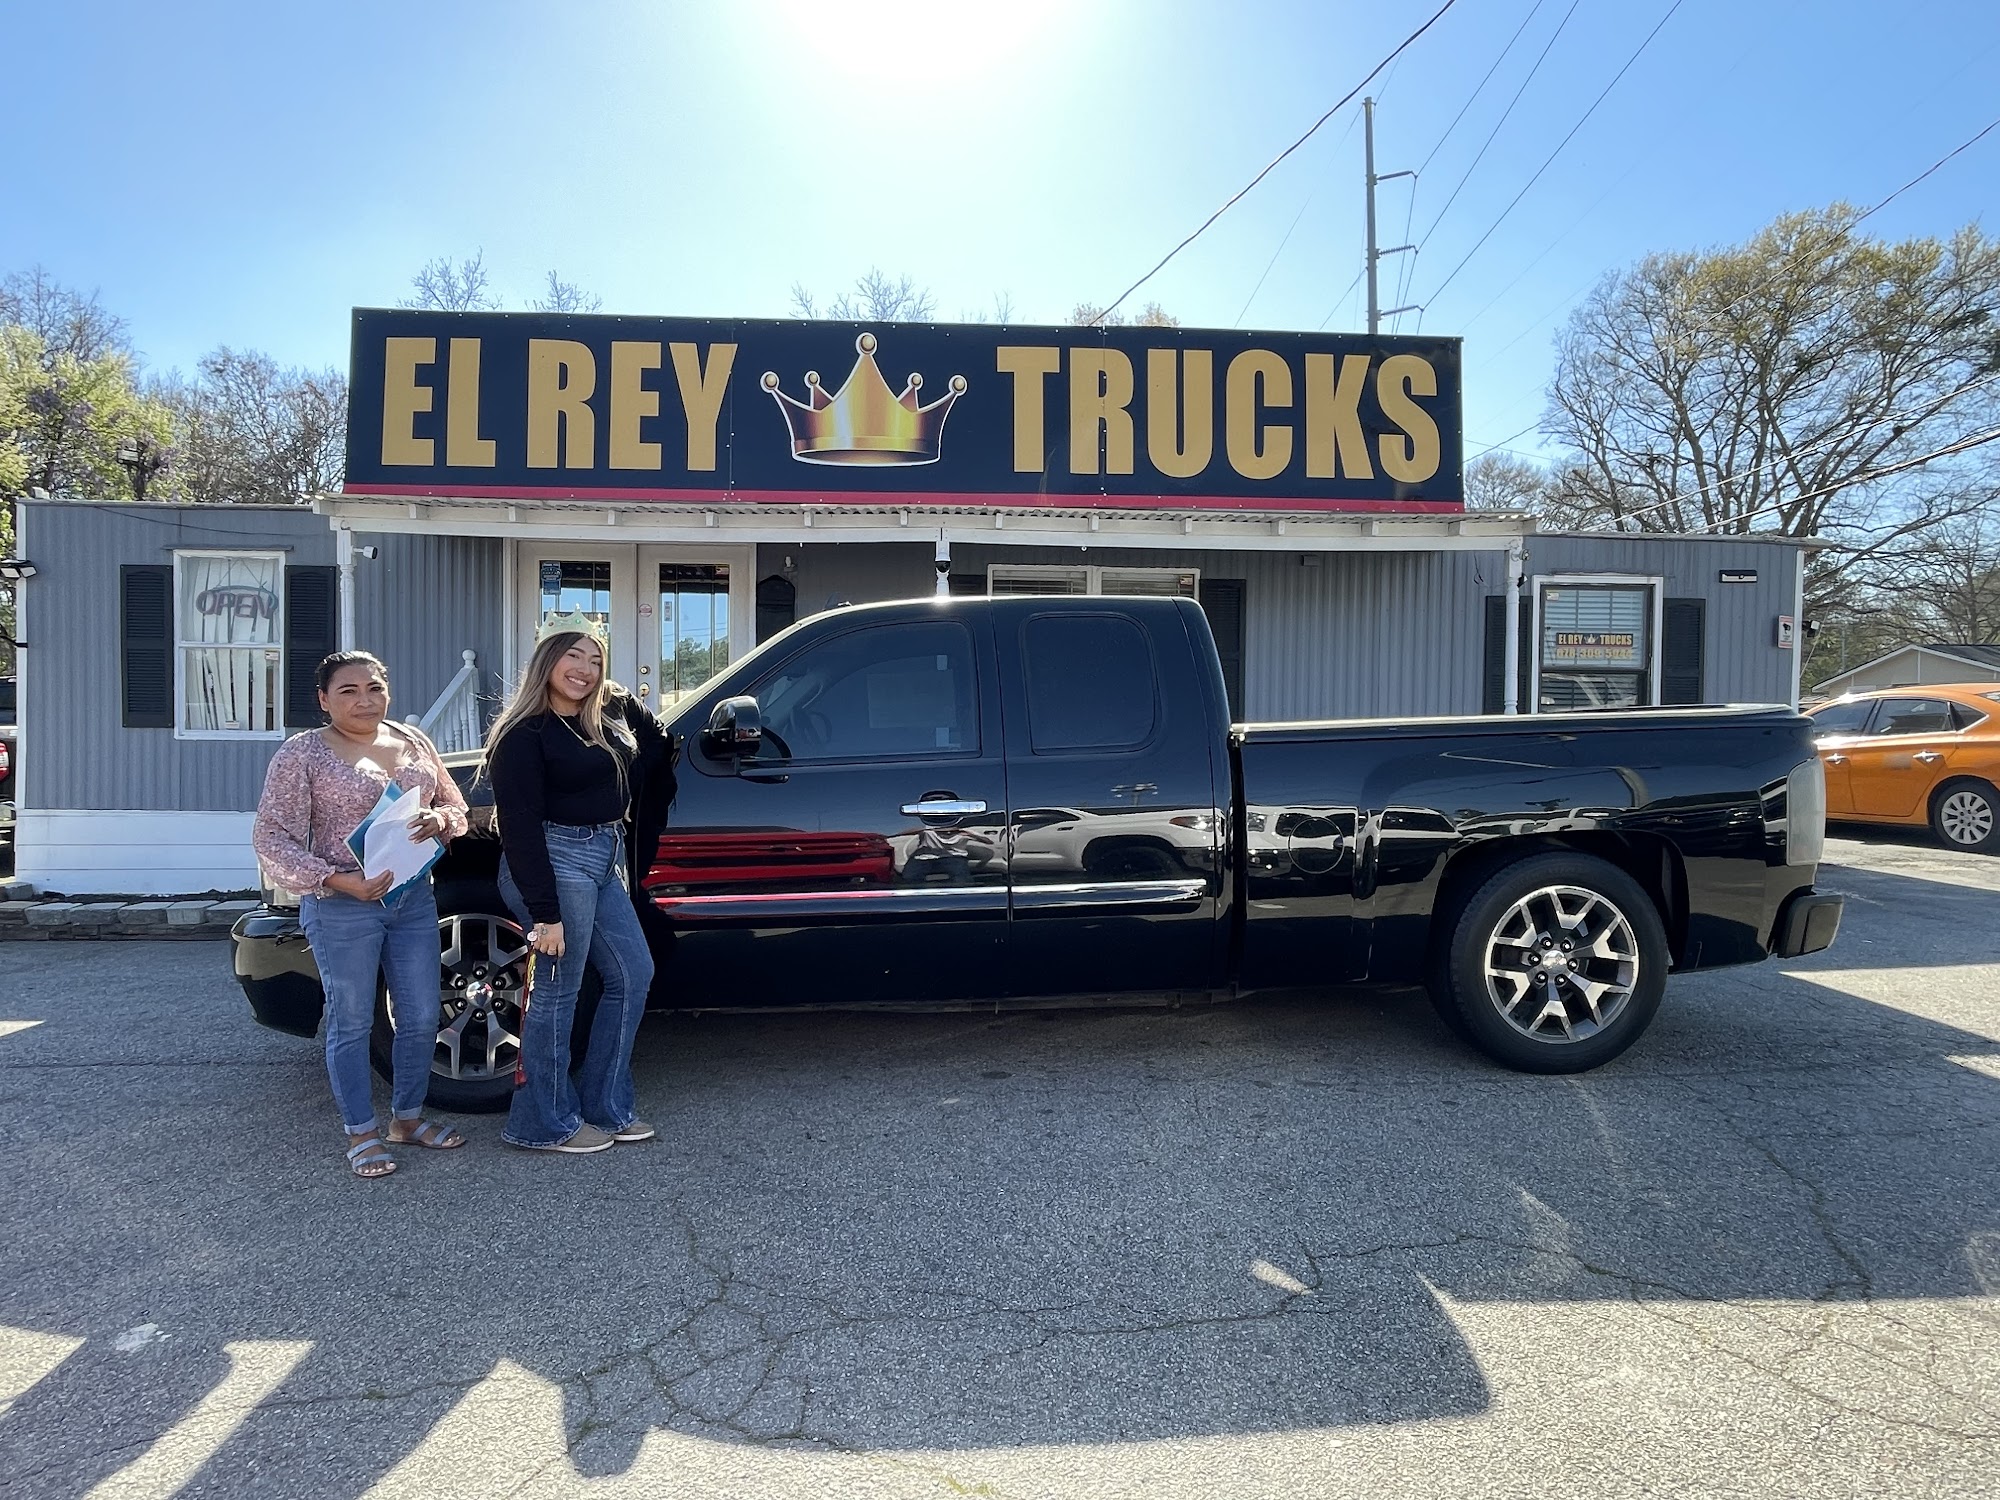 El Rey Trucks